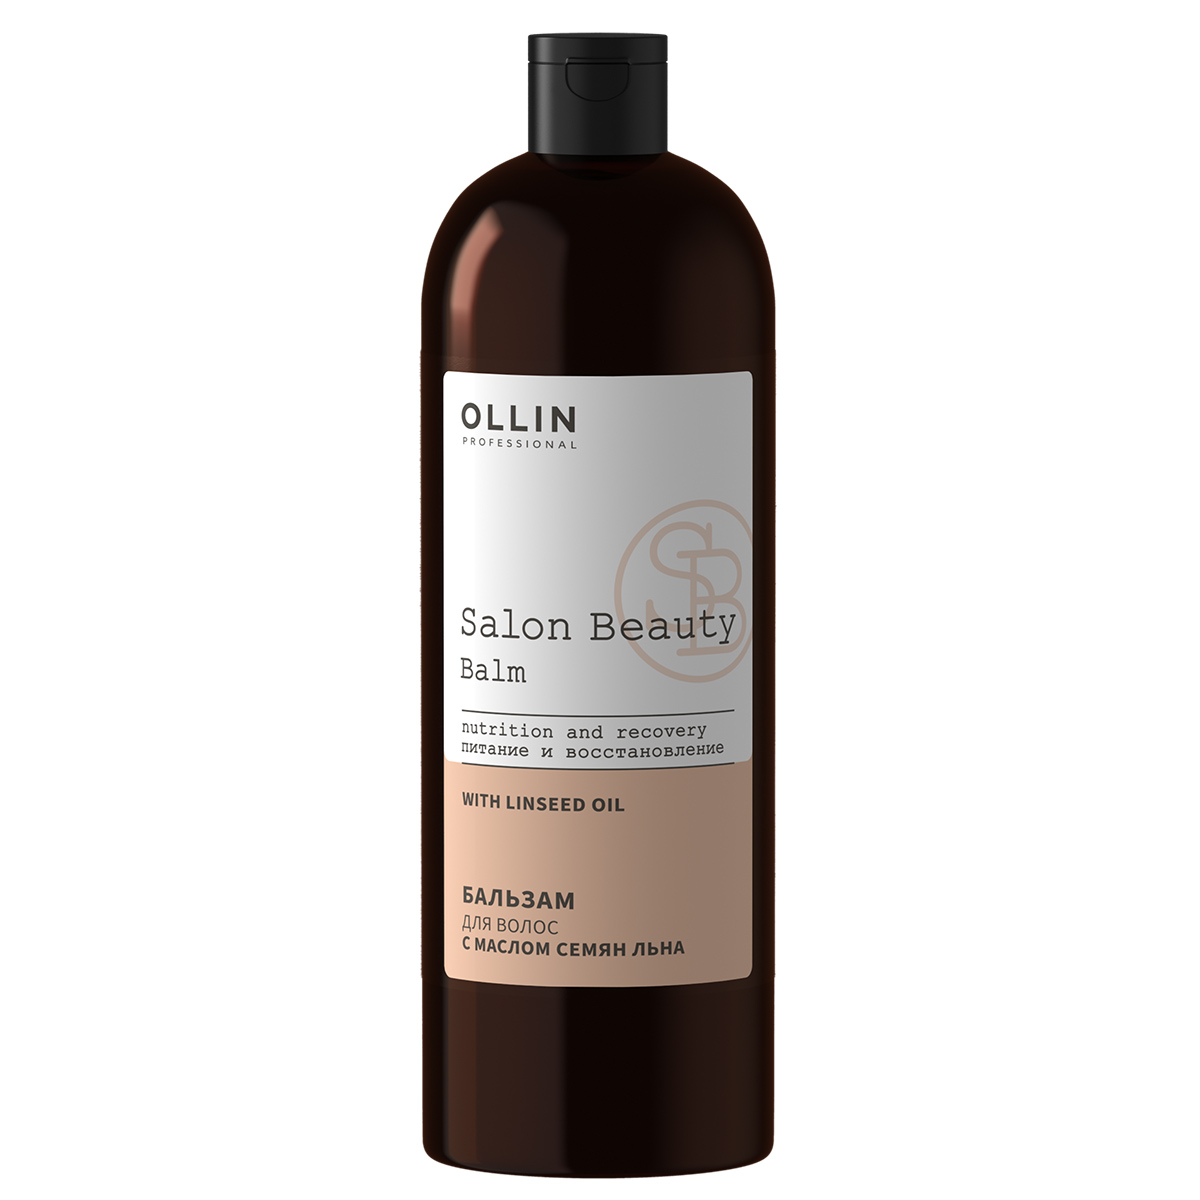 SALON BEAUTY Бальзам для волос с маслом семян льна, 1000мл, OLLIN